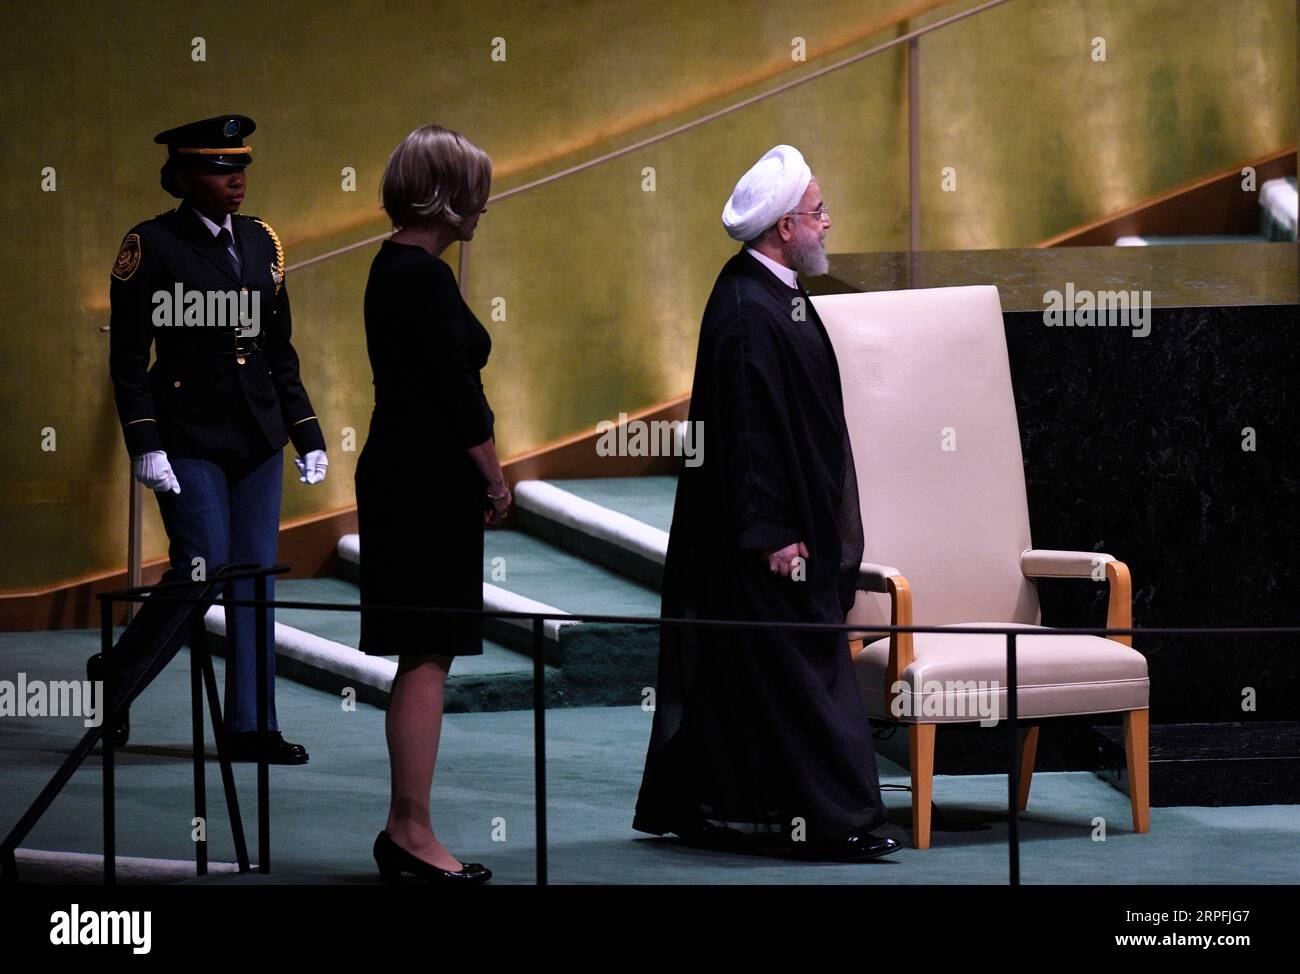 190925 -- NATIONS UNIES, 25 septembre 2019 -- le président iranien Hassan Rouhani R attend de s'adresser au débat général de la 74e session de l'Assemblée générale des Nations Unies au siège de l'ONU à New York, le 25 septembre 2019. Rouhani mercredi a exclu les négociations avec les États-Unis à moins que ces derniers ne lèvent d’abord les sanctions contre son pays. ONU-ASSEMBLÉE GÉNÉRALE-DÉBAT GÉNÉRAL-IRAN LIUXJIE PUBLICATIONXNOTXINXCHN Banque D'Images